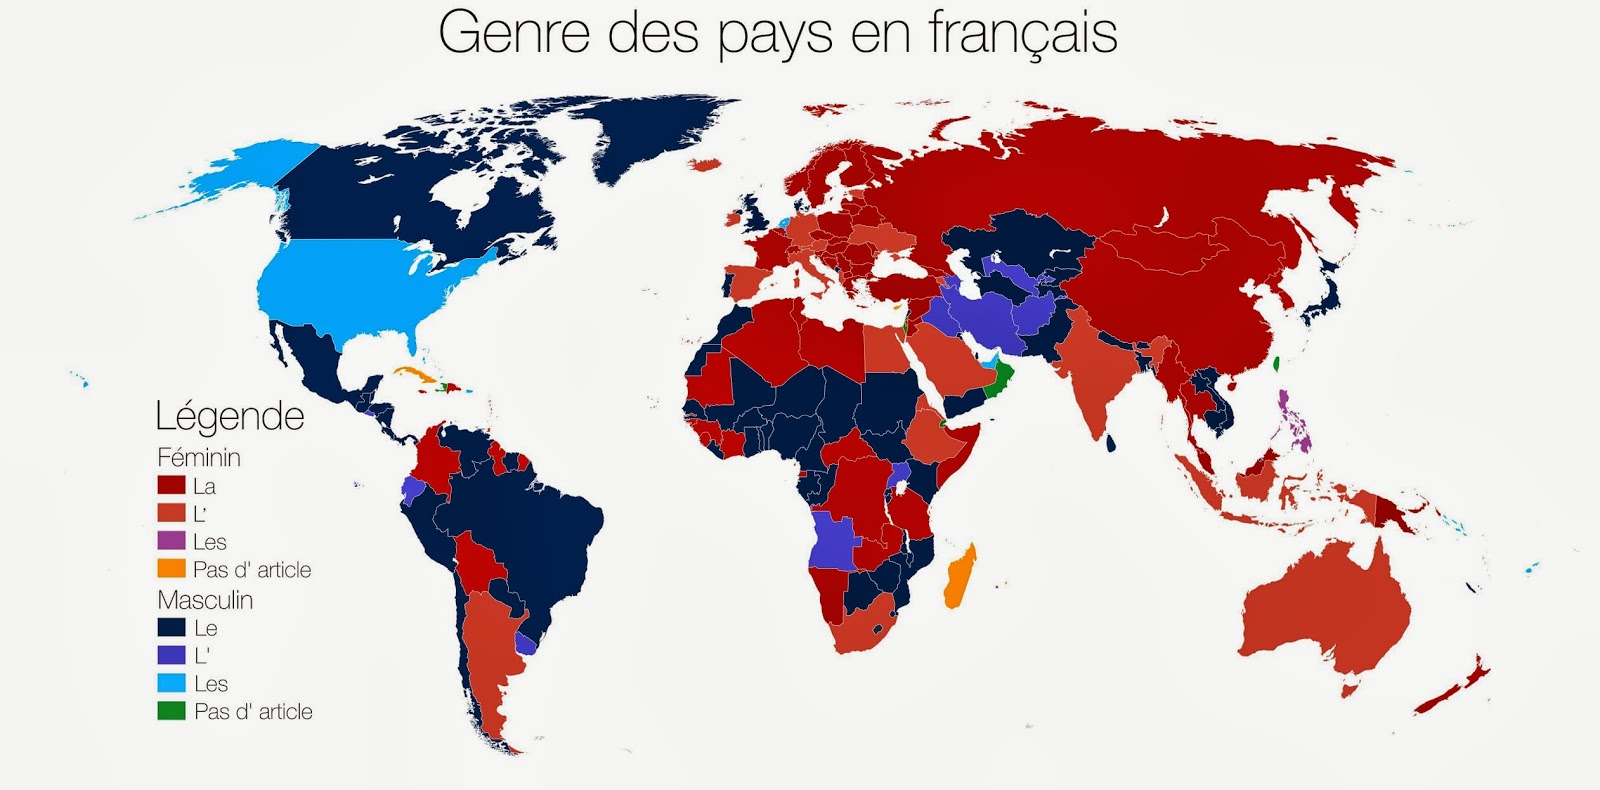 Грамматический род стран во французском языке